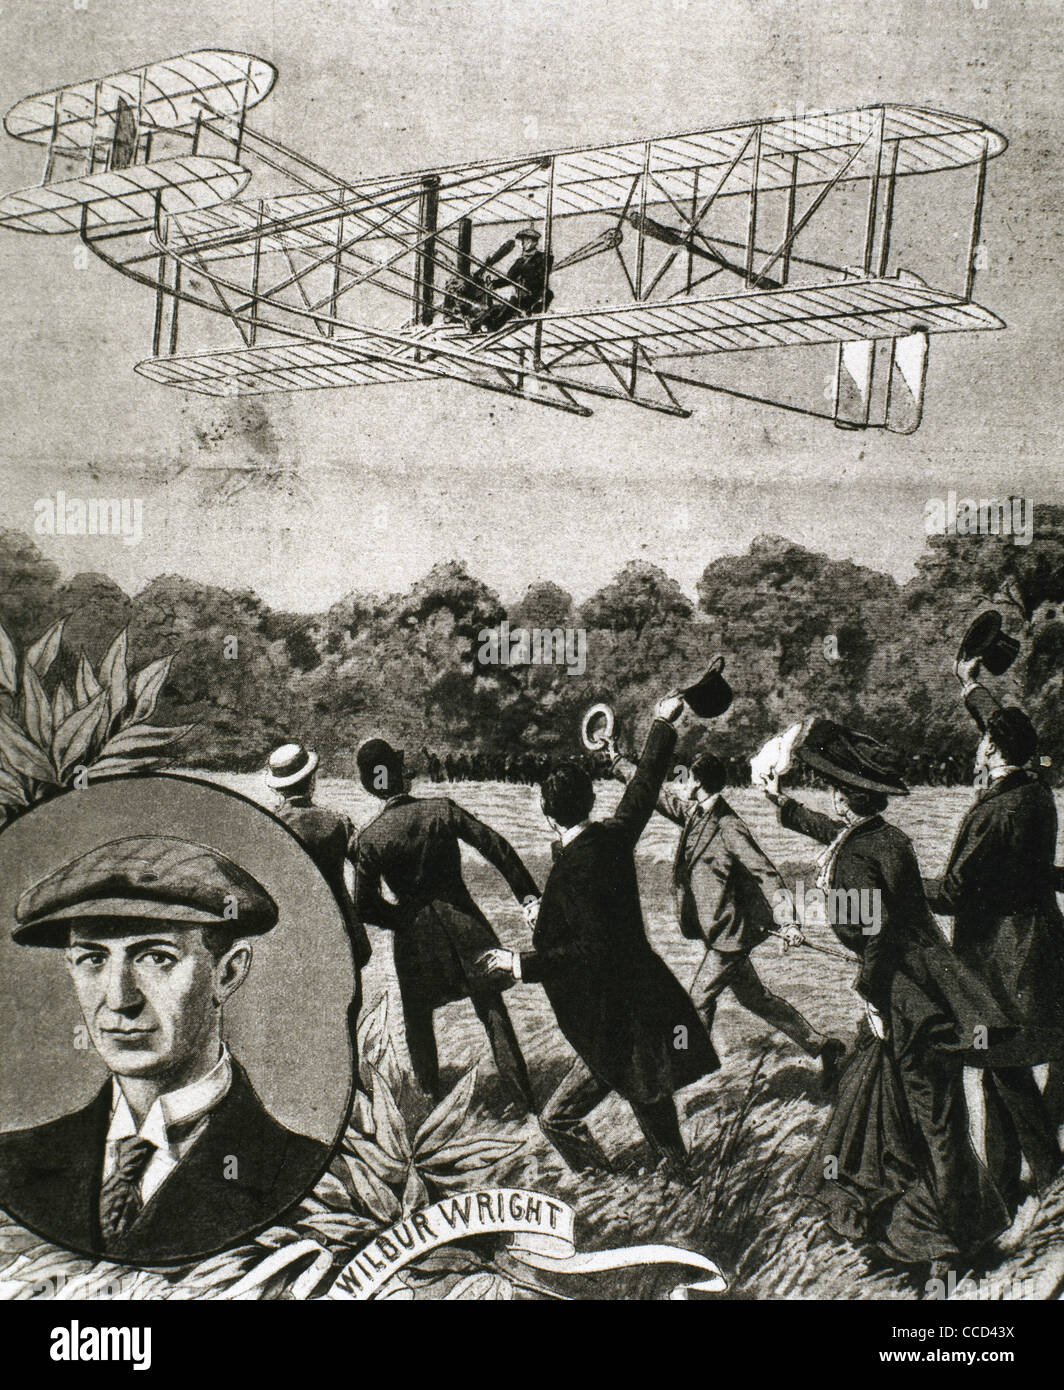 Wilbur Wright (1867-1912). Amerikanischer Flieger. Flugzeug fliegt über das Feld Anvours (Frankreich). Abbildung. Stockfoto